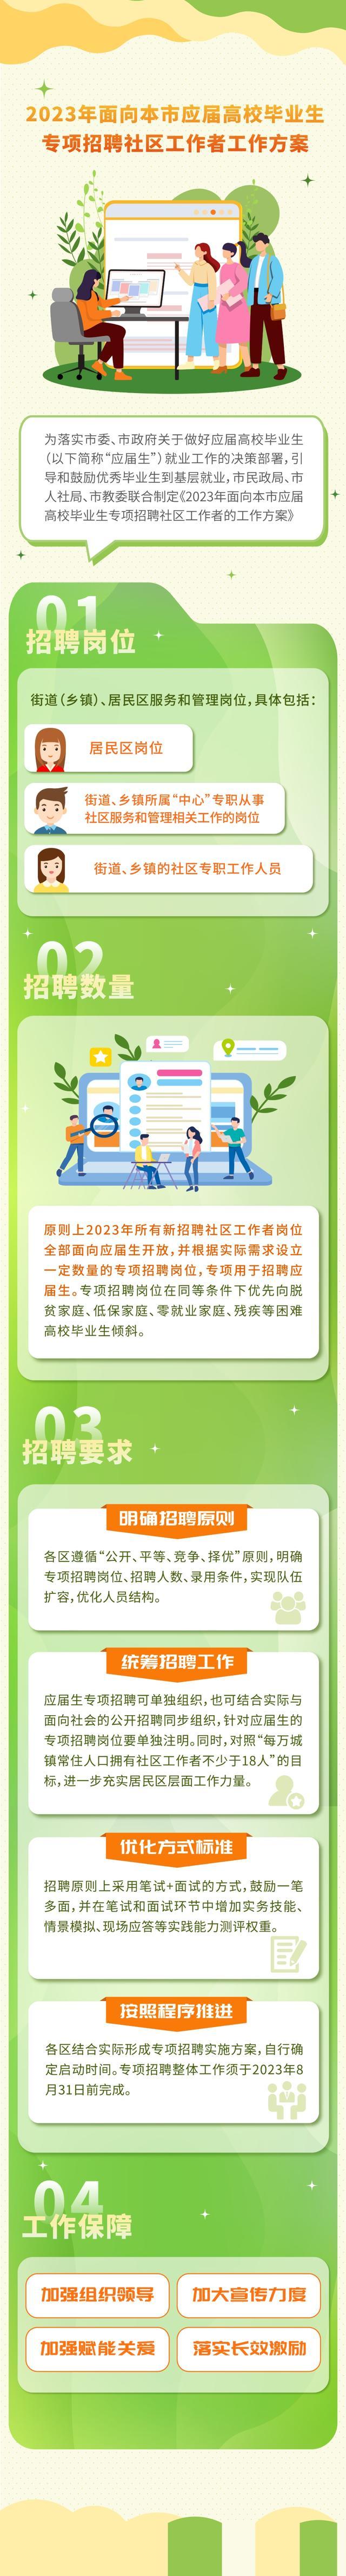 应届高校毕业生，社区欢迎你！上海市出台面向应届生的社区工作者专项招聘工作方案